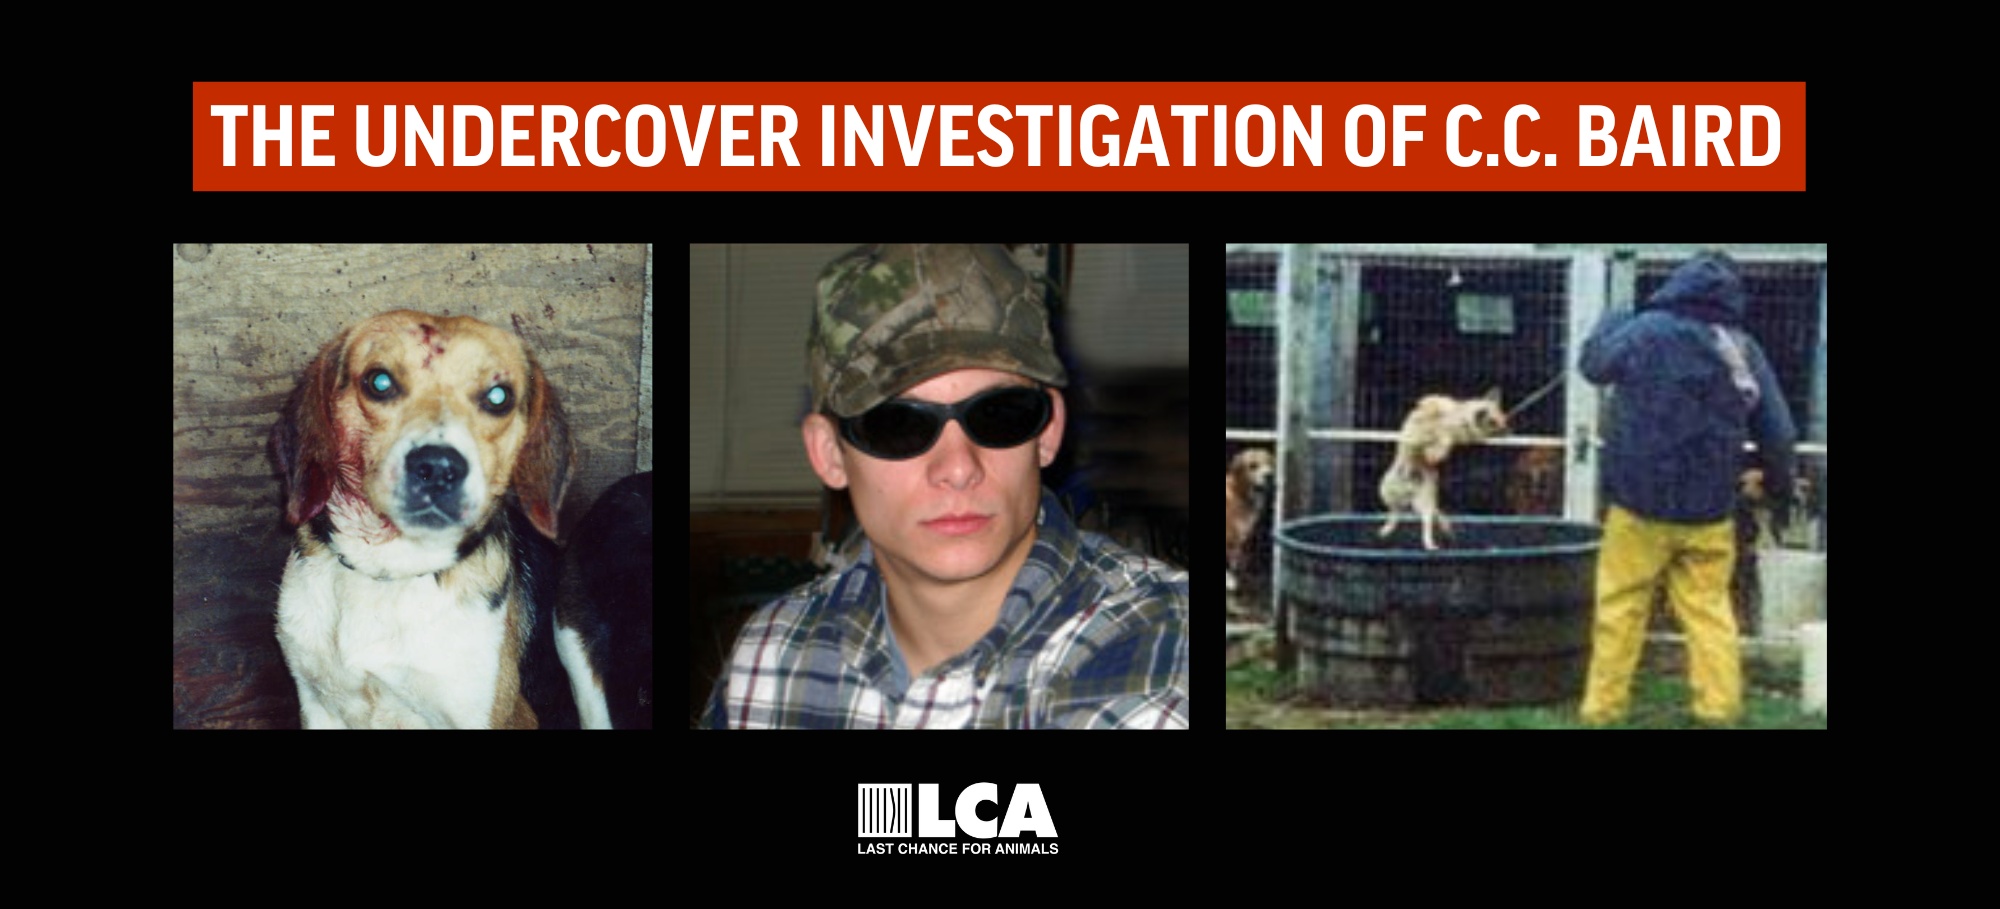 cc baird undercover investigation